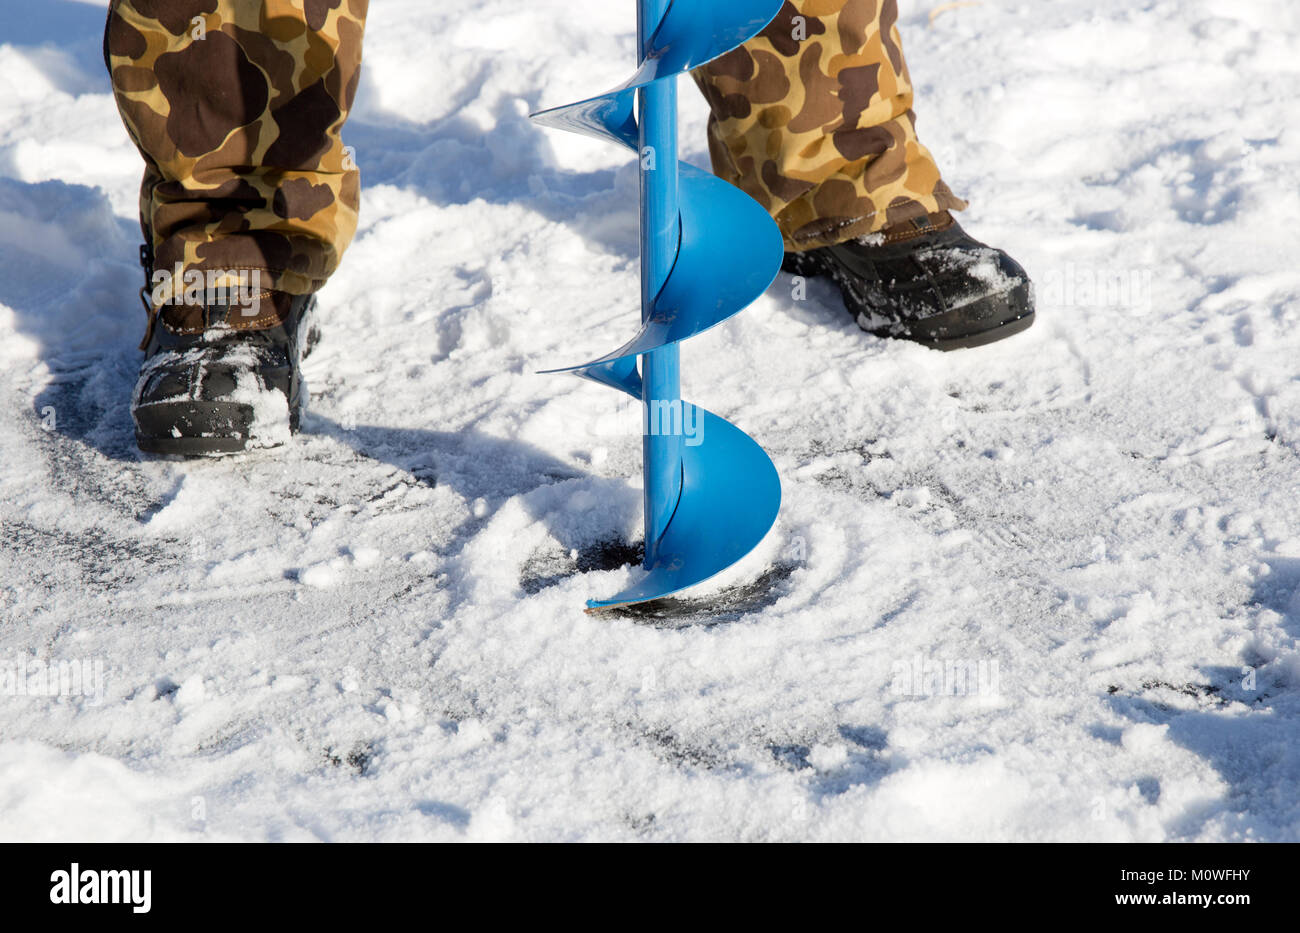 Une personne de percer un trou dans la glace d'un lac gelé à l'aide d'une glace auguer (une vis hélicoïdale à lames). Banque D'Images